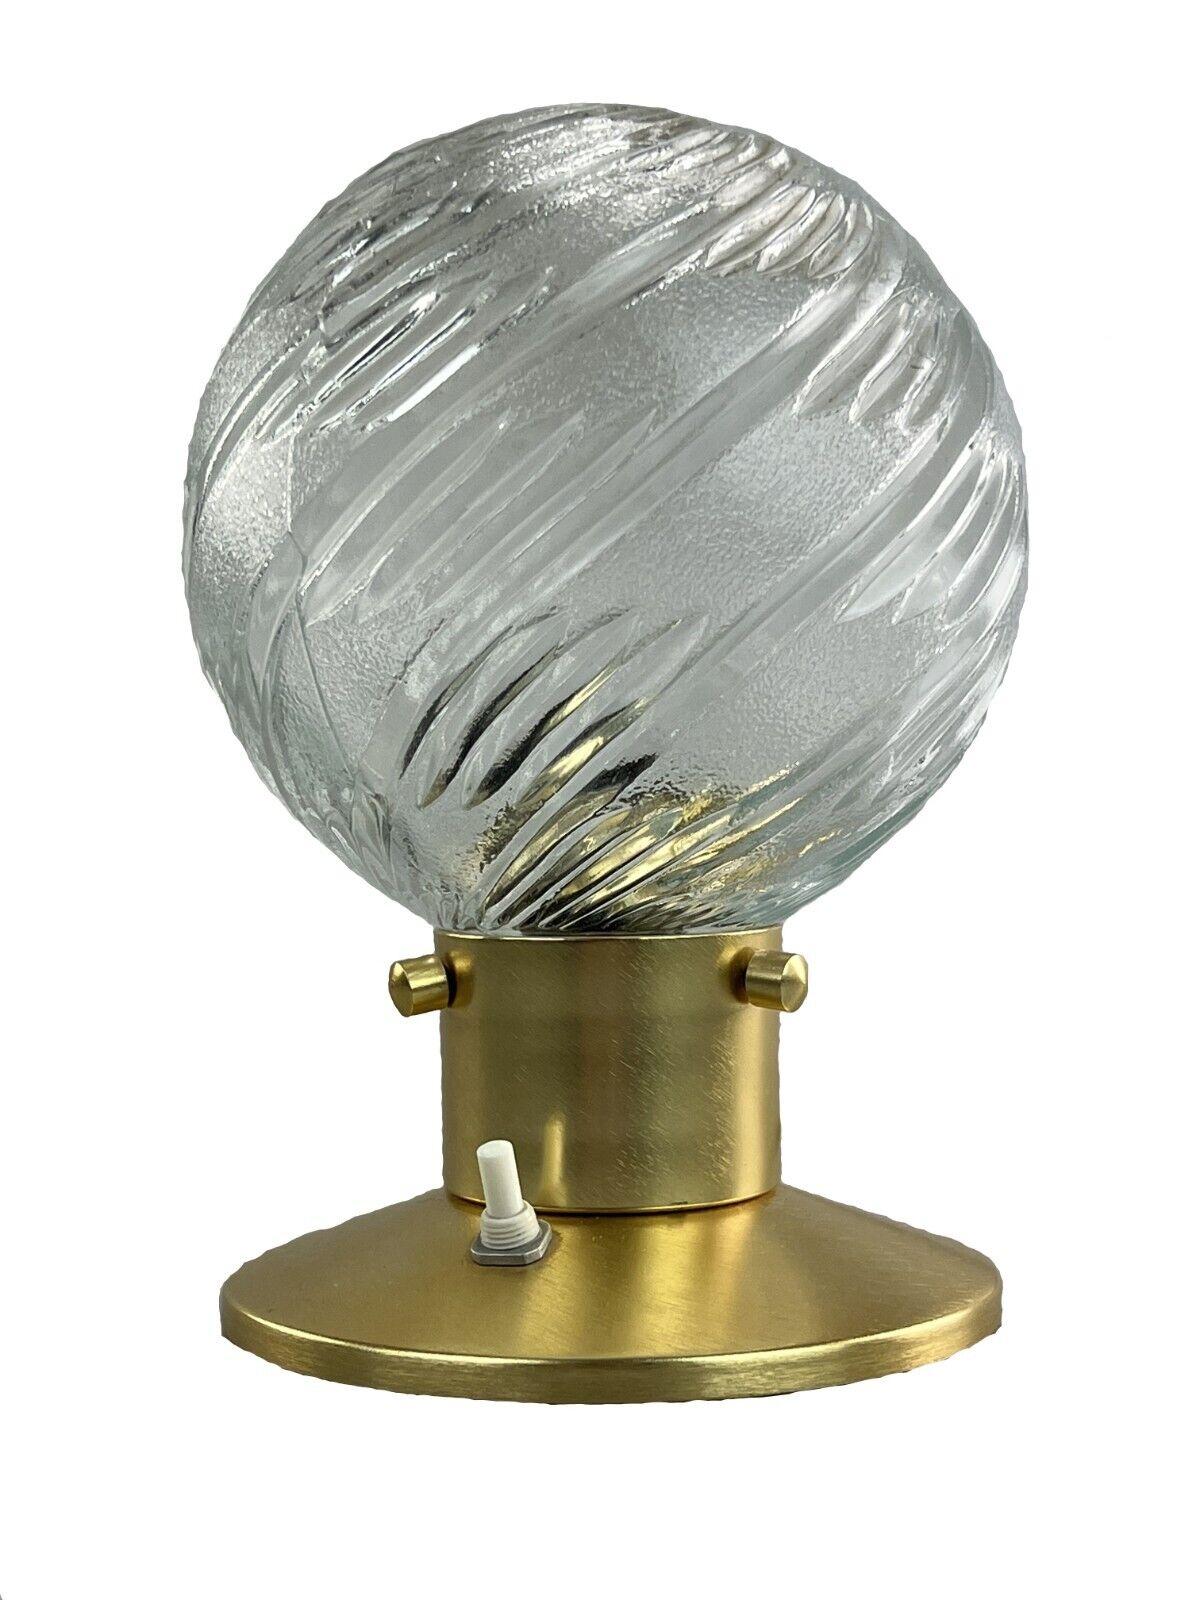 60er 70er Jahre Kugellampe Licht Tischlampe Nachttischlampe Space Age Design

Objekt: Tischleuchte

Hersteller:

Zustand: gut

Alter: etwa 1960-1970

Abmessungen:

Durchmesser = 16cm
Höhe = 22cm

Sonstige